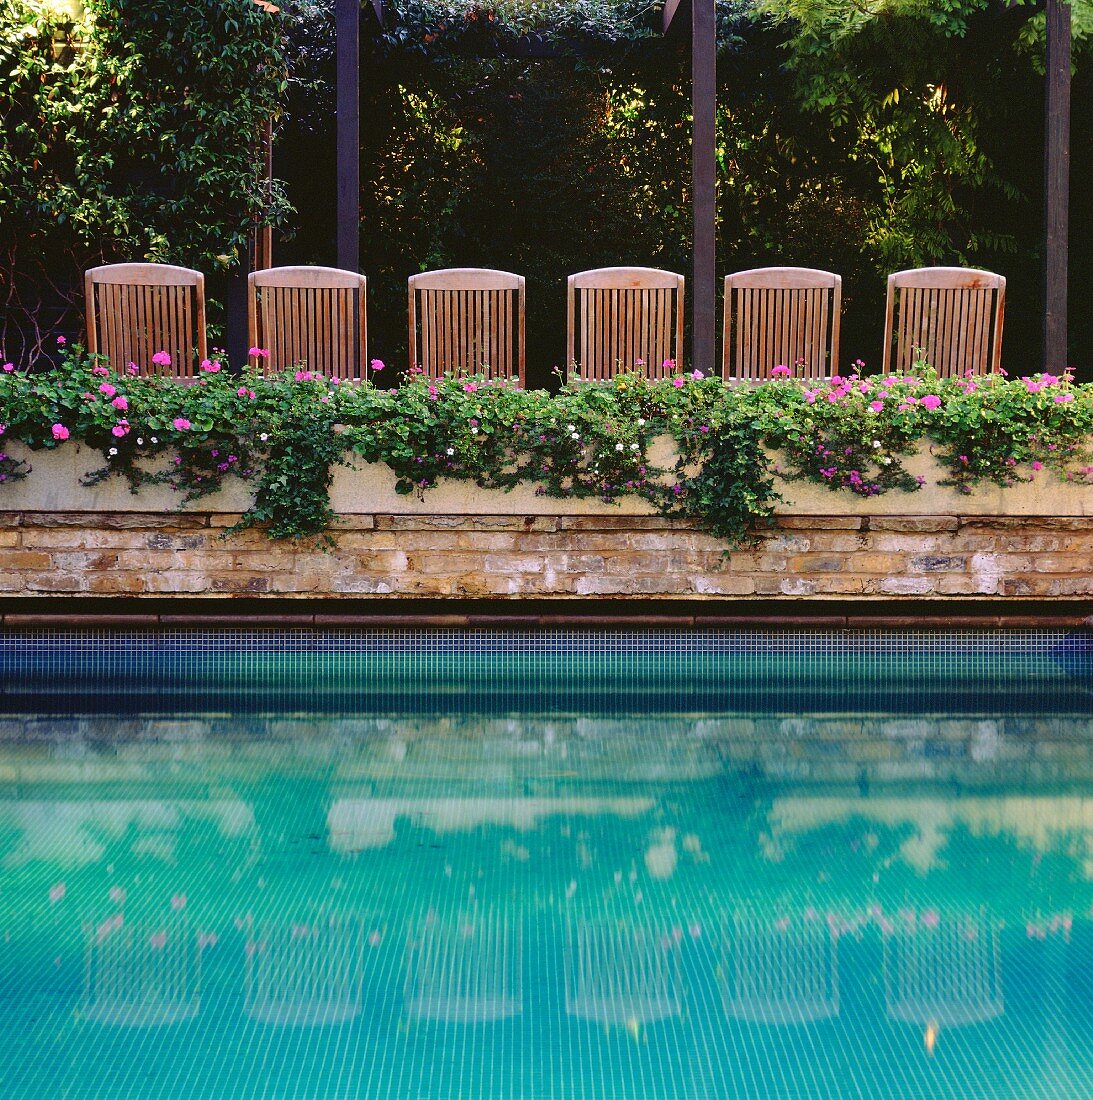 Pool von Blumenkästen umgeben und Liegestühle